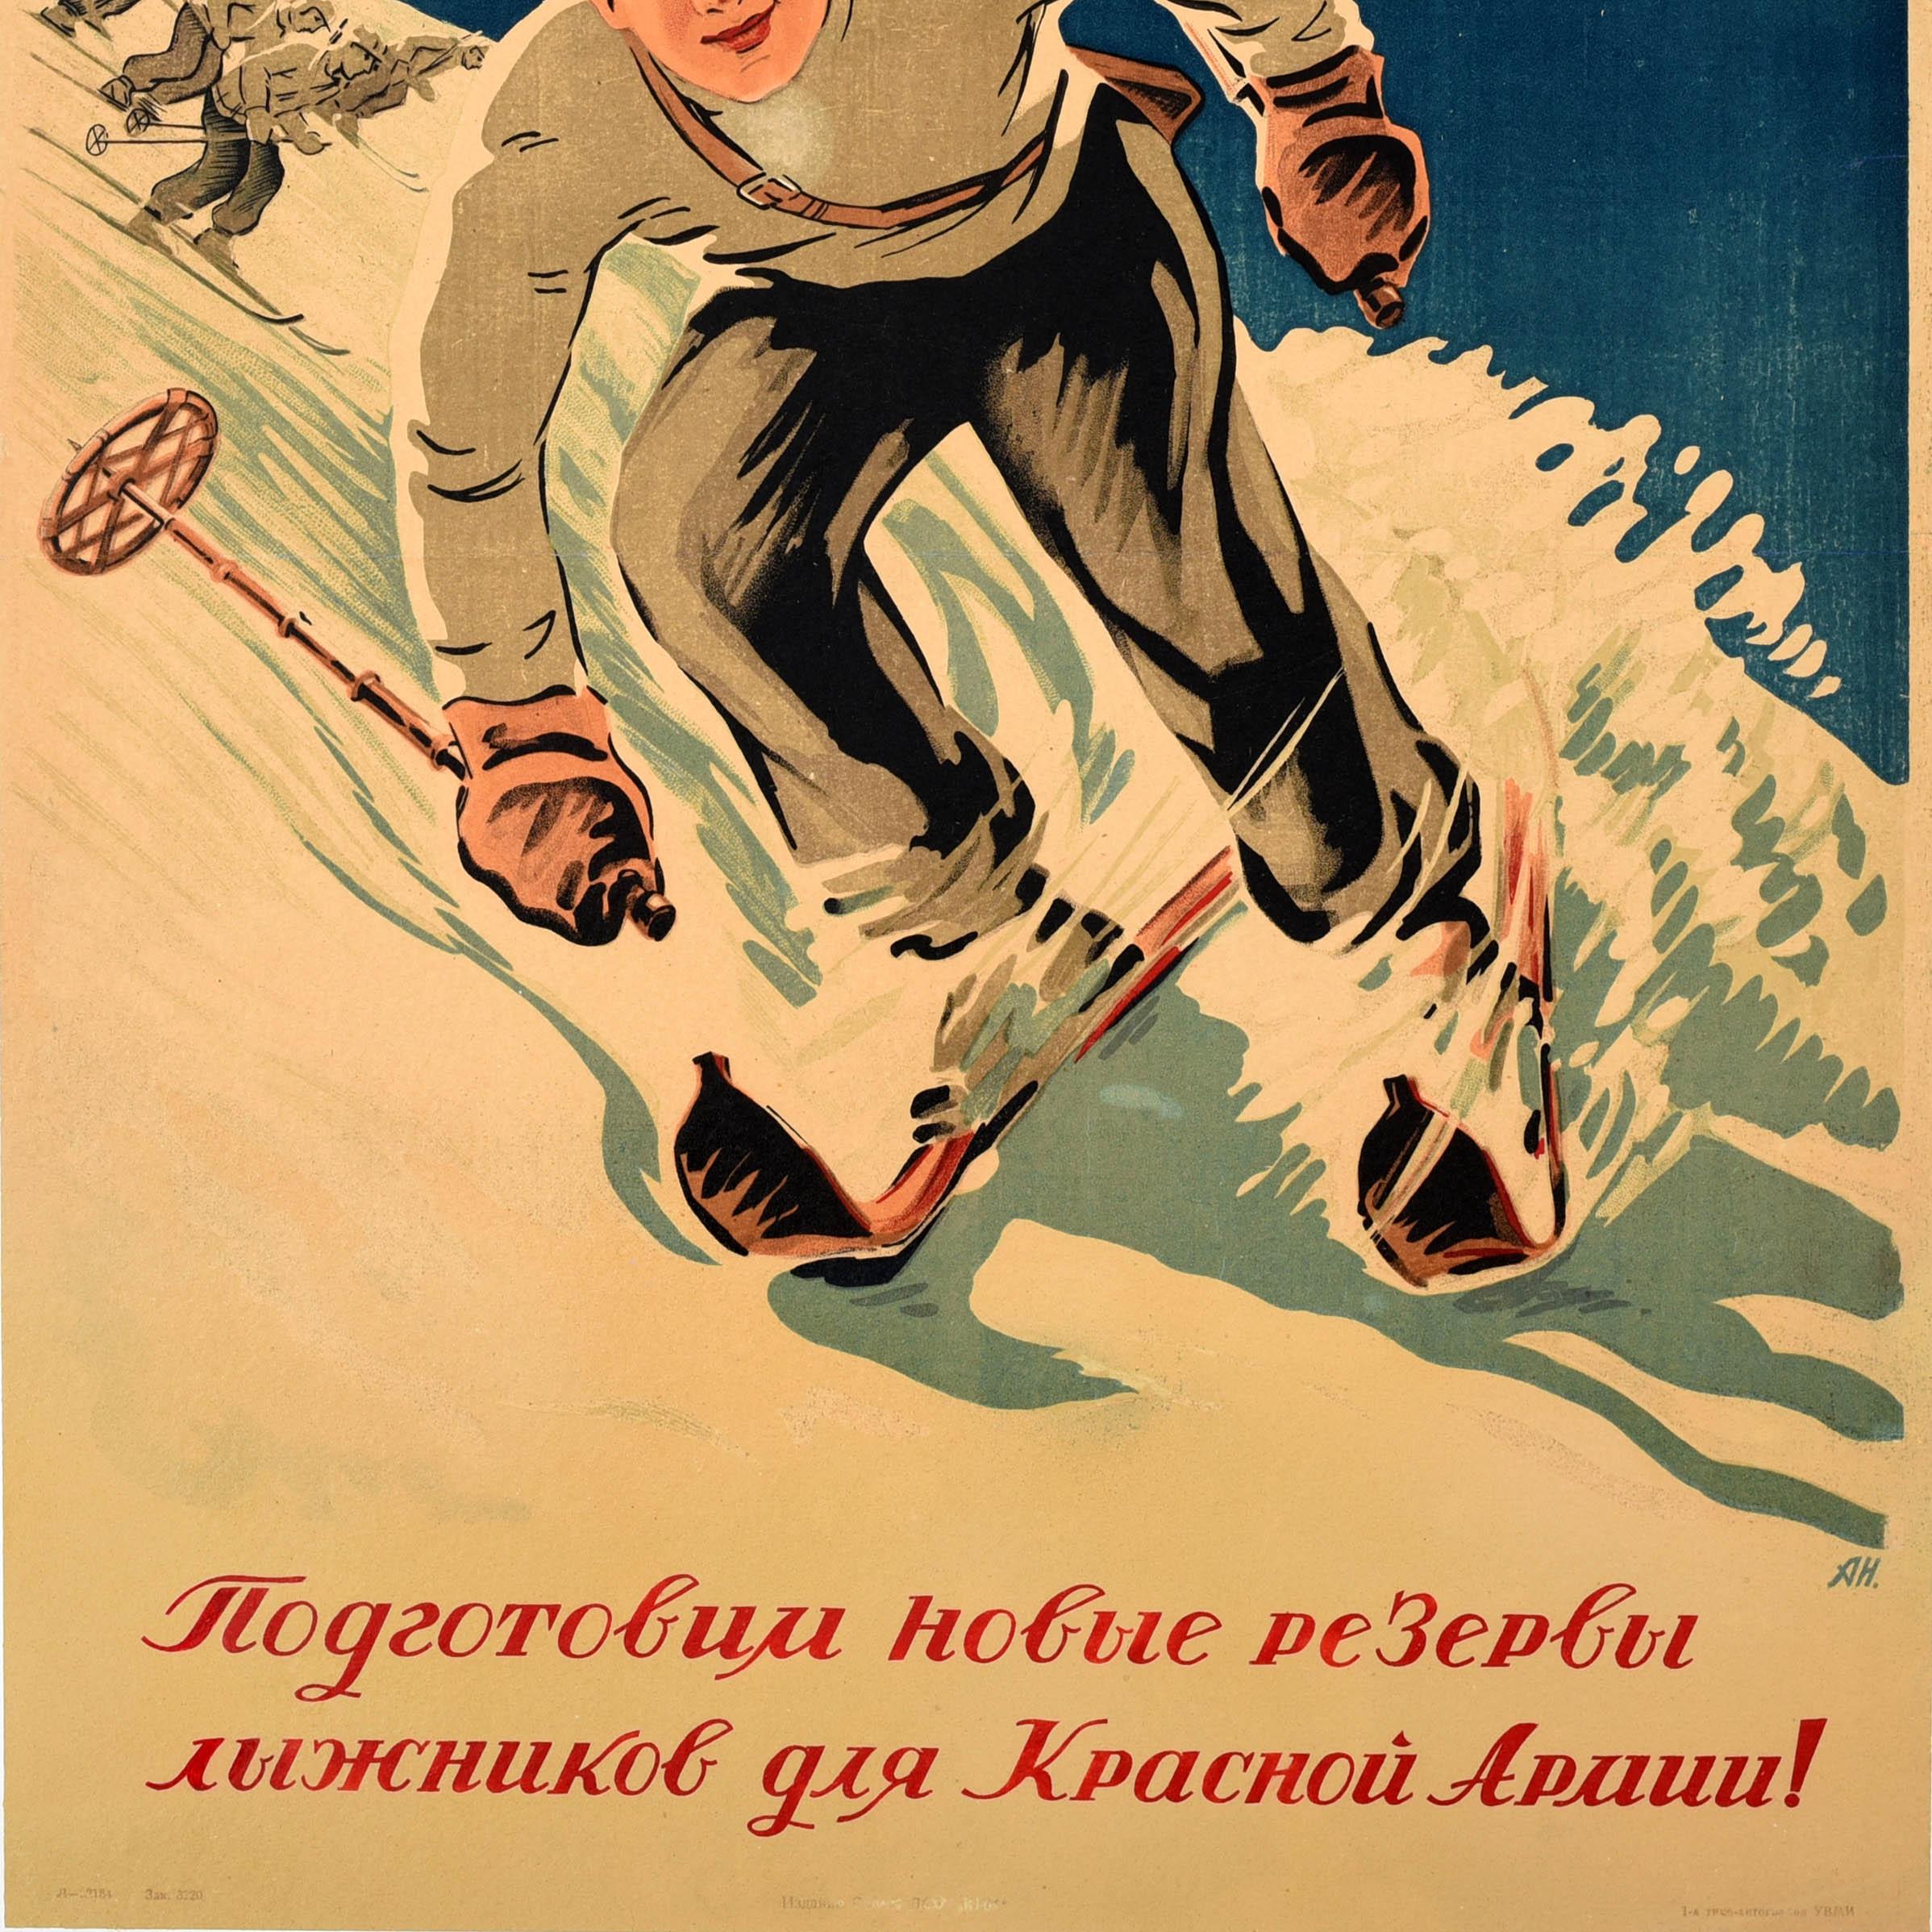 Originales sowjetisches Plakat für die All-Union Freiwillige Sportgesellschaft - Bereiten wir neue Reserven von Skifahrern für die Rote Armee vor! Dynamisches Kunstwerk mit einem Skifahrer, der mit hoher Geschwindigkeit auf den Betrachter zufährt,